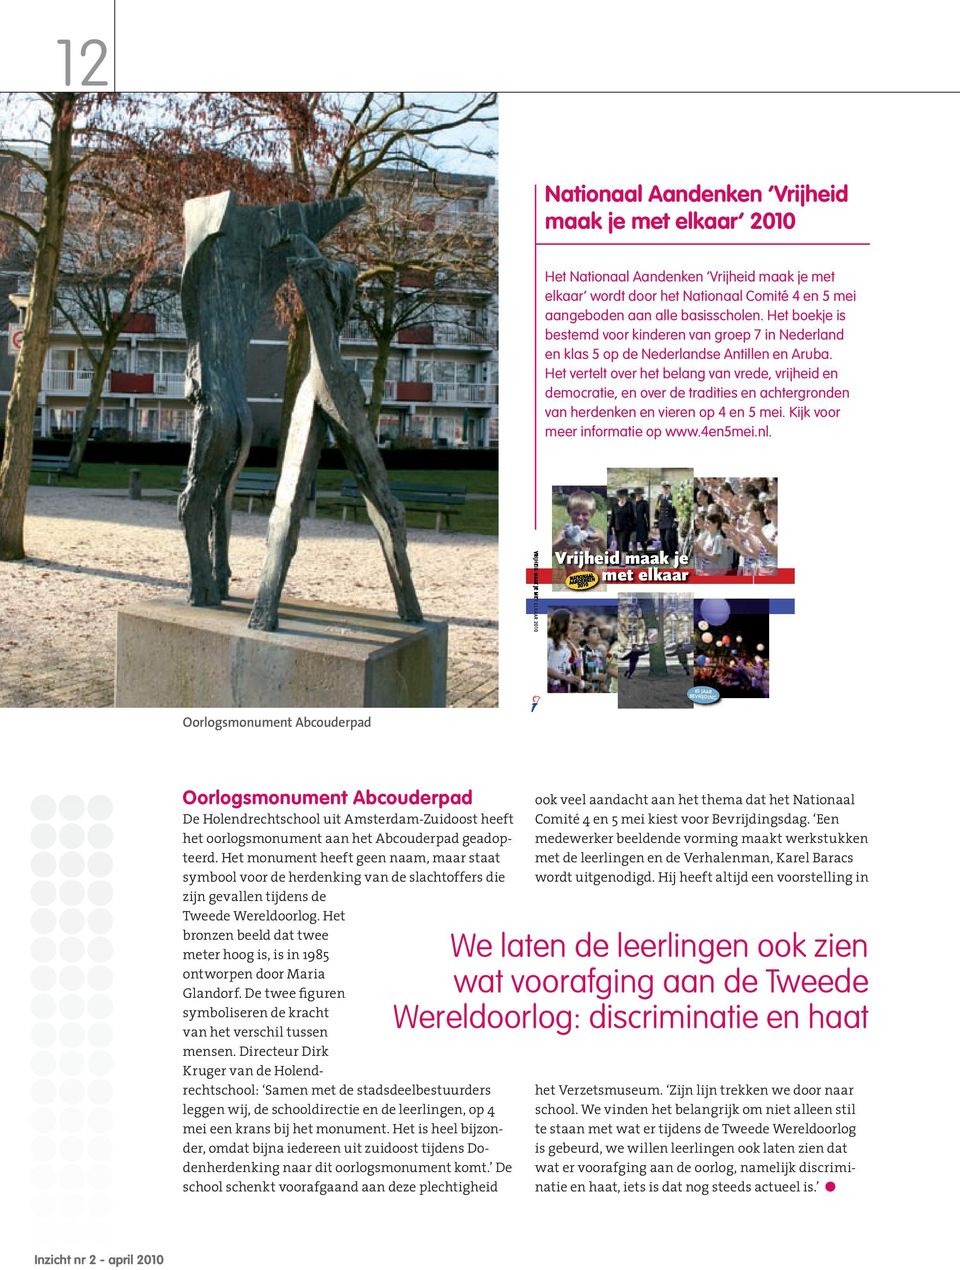 Het vertelt over het belang van vrede, vrijheid en democratie, en over de tradities en achtergronden van herdenken en vieren op 4 en 5 mei. Kijk voor meer informatie op www.4en5mei.nl.